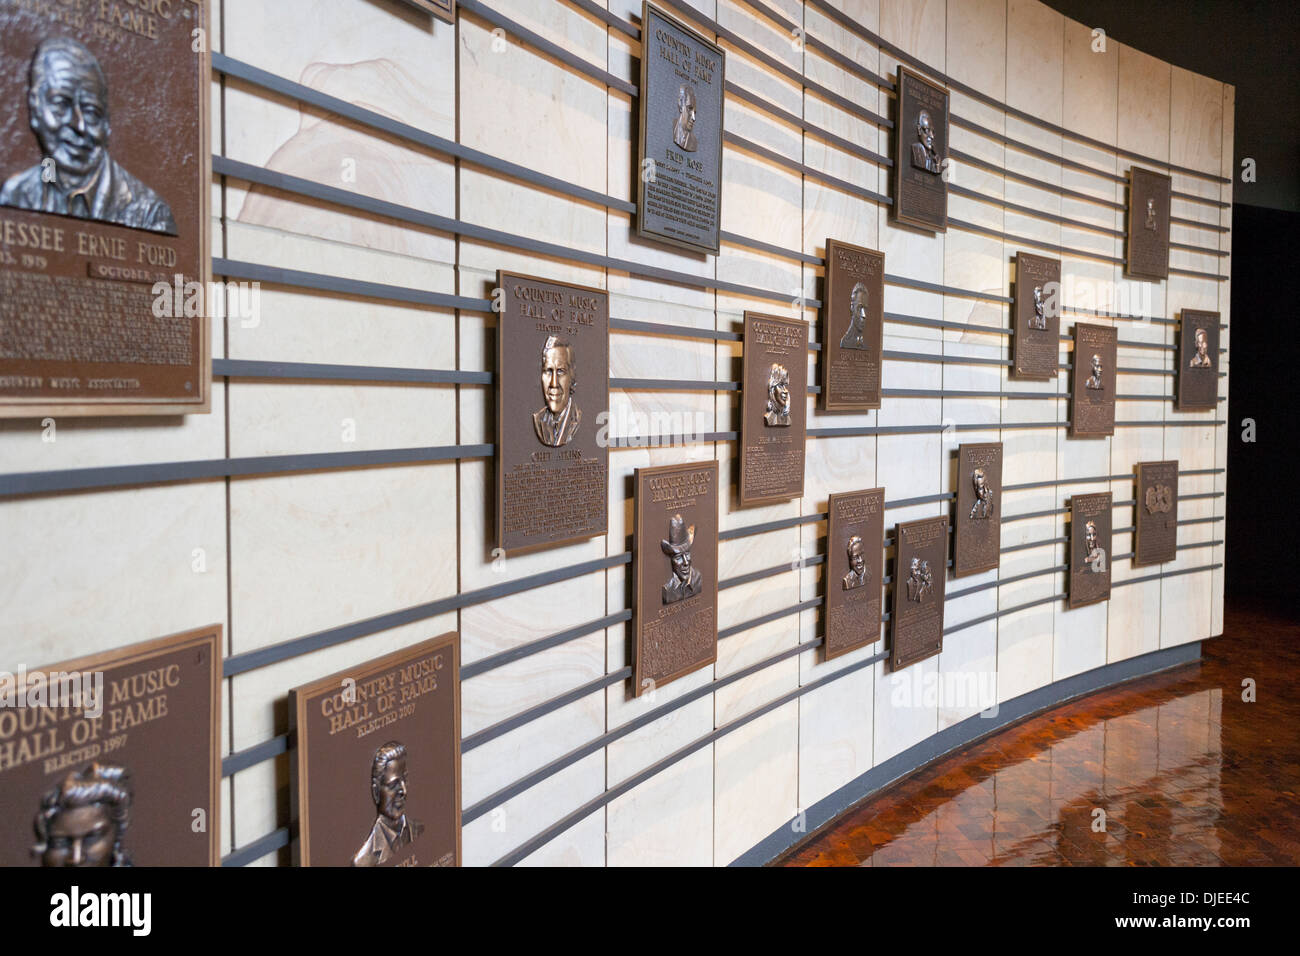 Molte le placche riconoscendo stelle nel paese professione musicale presso il Country Music Hall of Fame a Nashville, TN, Stati Uniti d'America Foto Stock